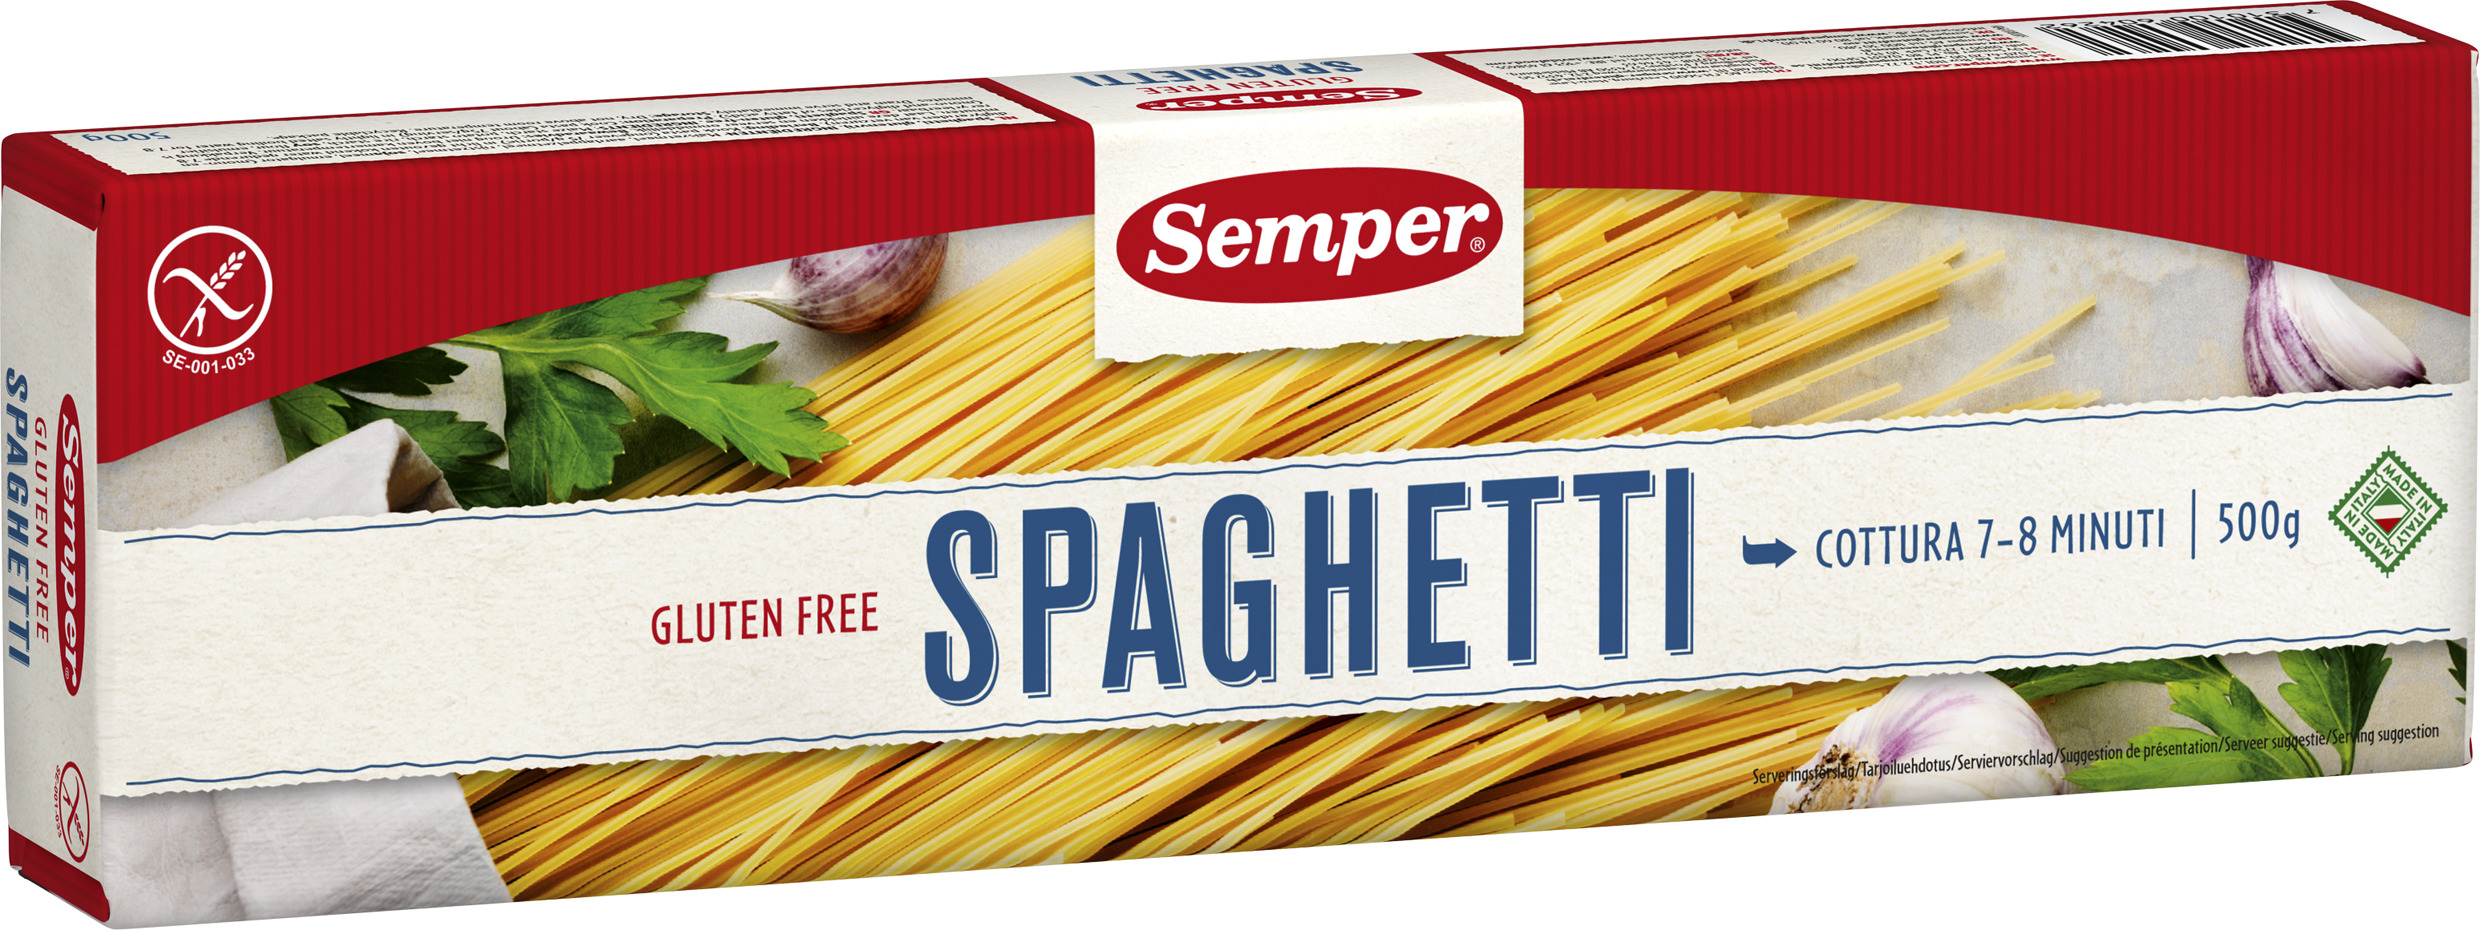 Semper glutenfri Spaghetti 500 g